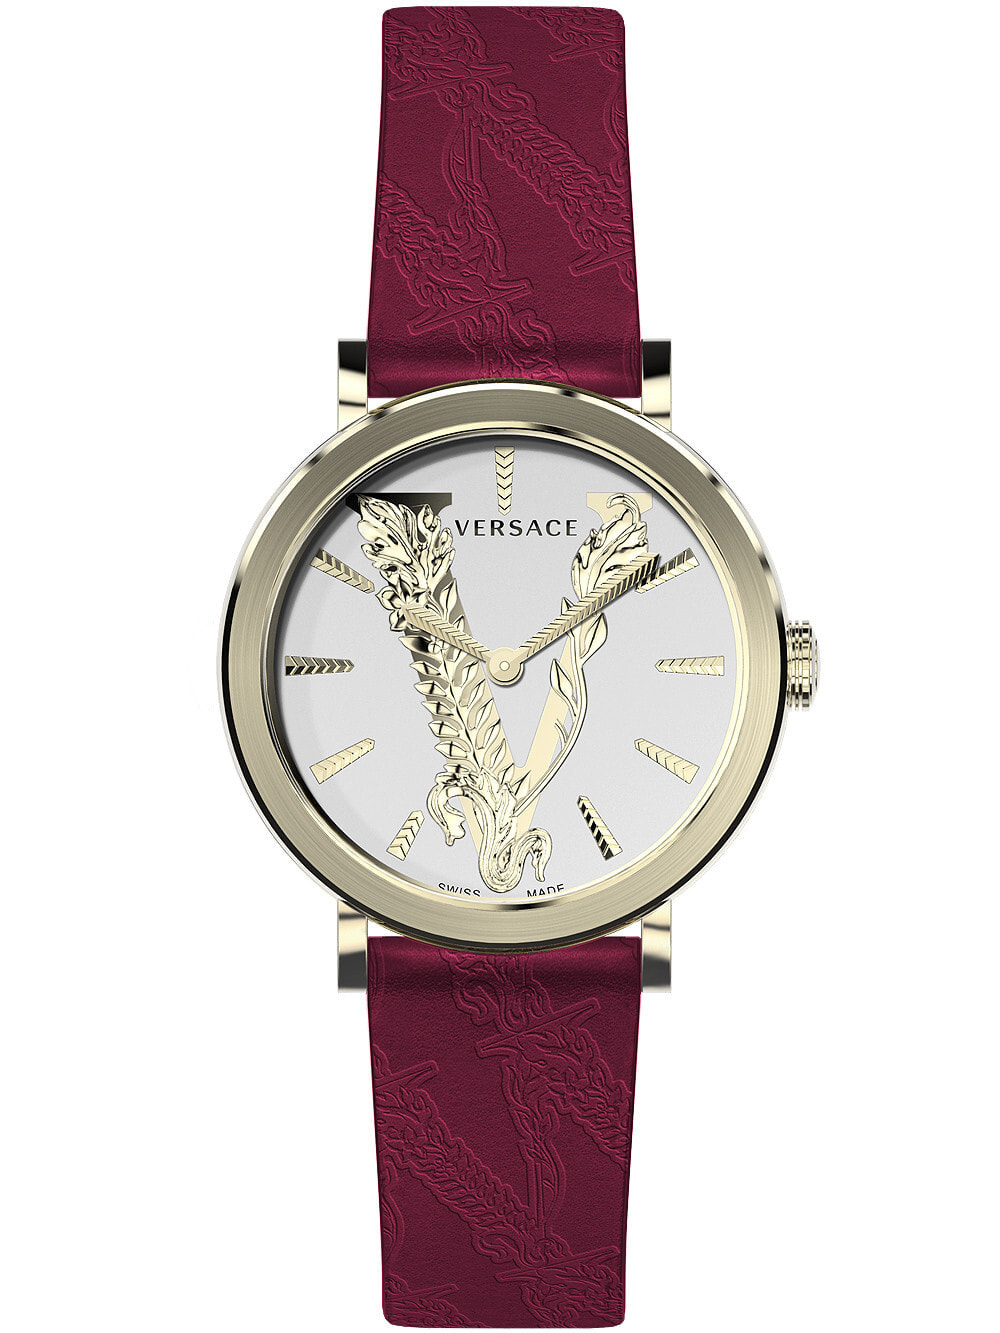 Женские наручные кварцевые часы Versace ремешок из телячьей кожи. Водонепроницаемость-5 АТМ. Защитное от царапин противоотражающее сапфировое стекло.